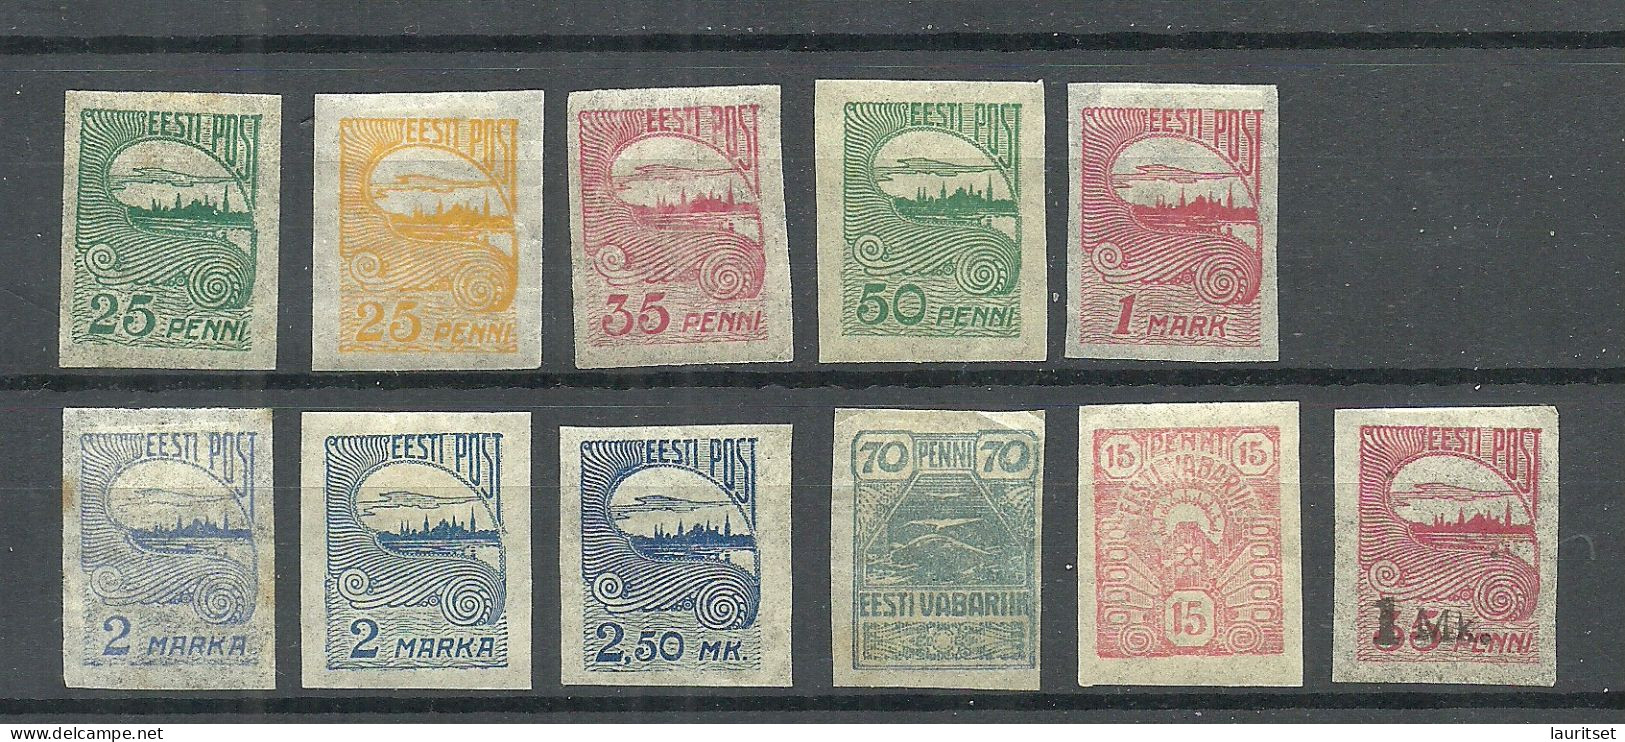 ESTLAND ESTONIA 1919/24 Tallinn Skyline Etc. Stamps On Pelure Paper Zigarettenpapier * Incl. Mi 17 A + B - Estonia